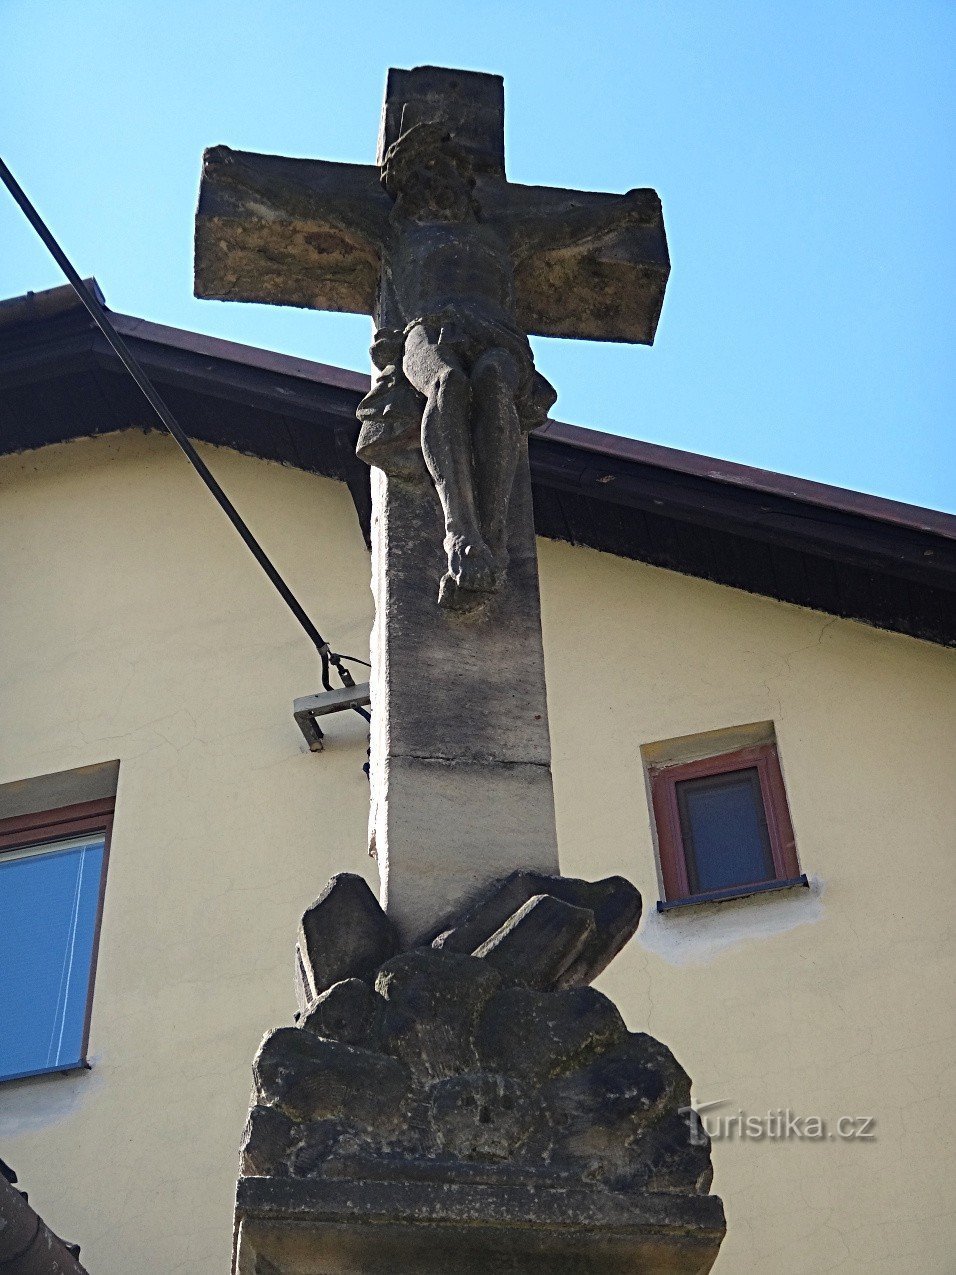 Studenka detaliu al crucii lui Fabián